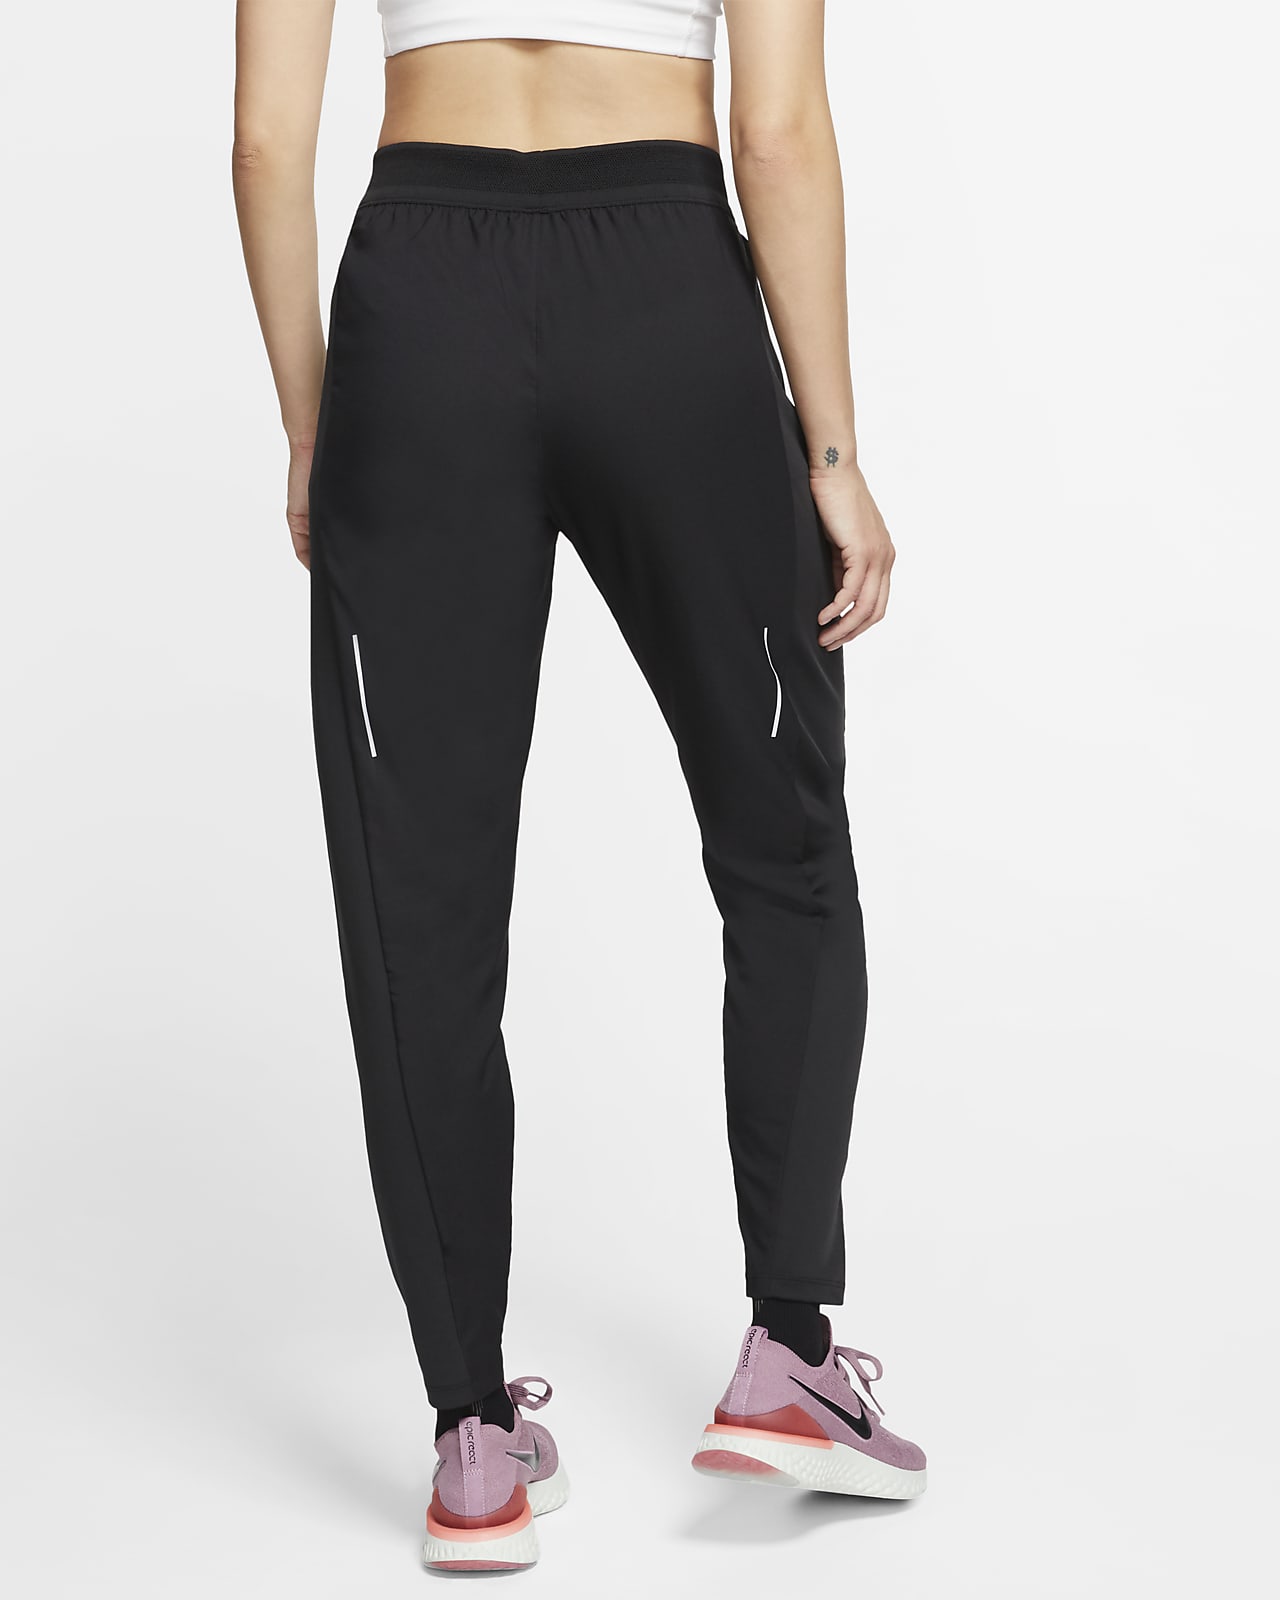 Pantaloni da running Nike Swift - Donna. Nike CH